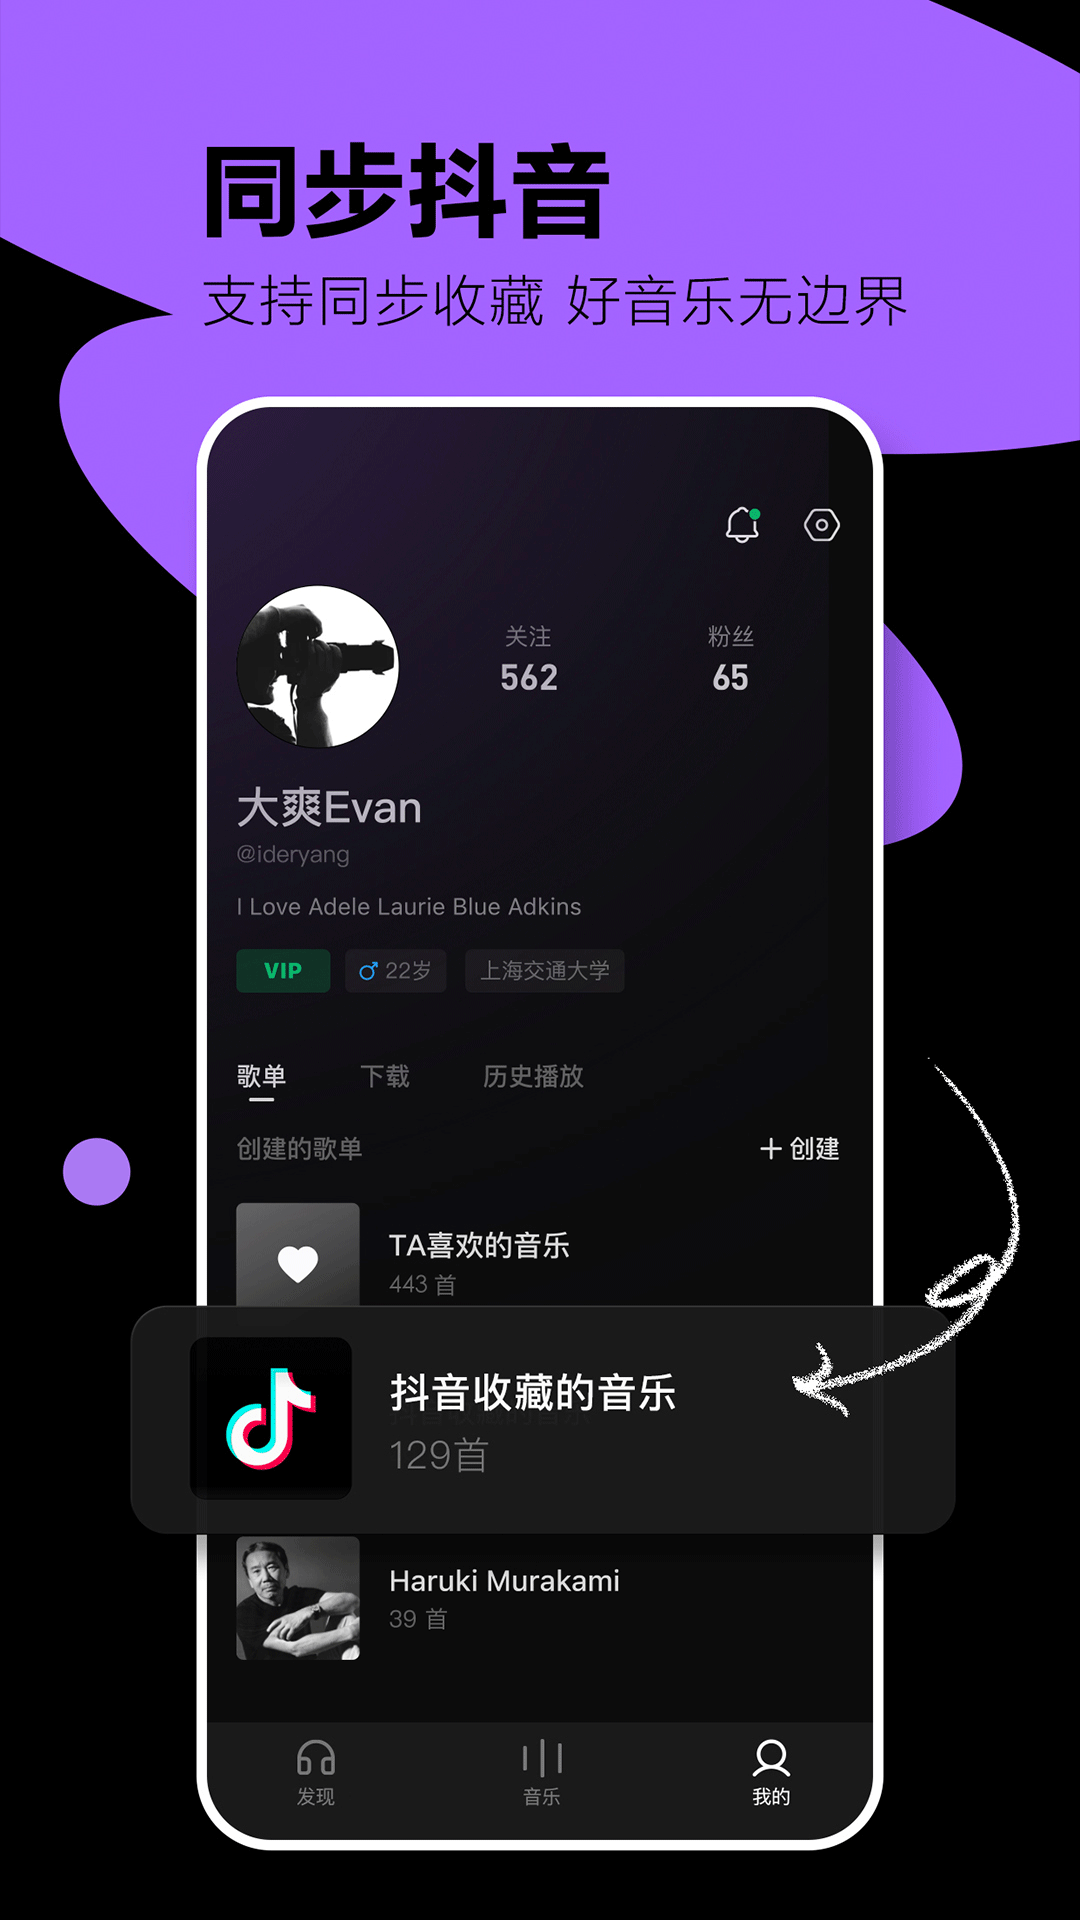 字节跳动上线音乐App——汽水音乐｜微果酱 - 增长黑客